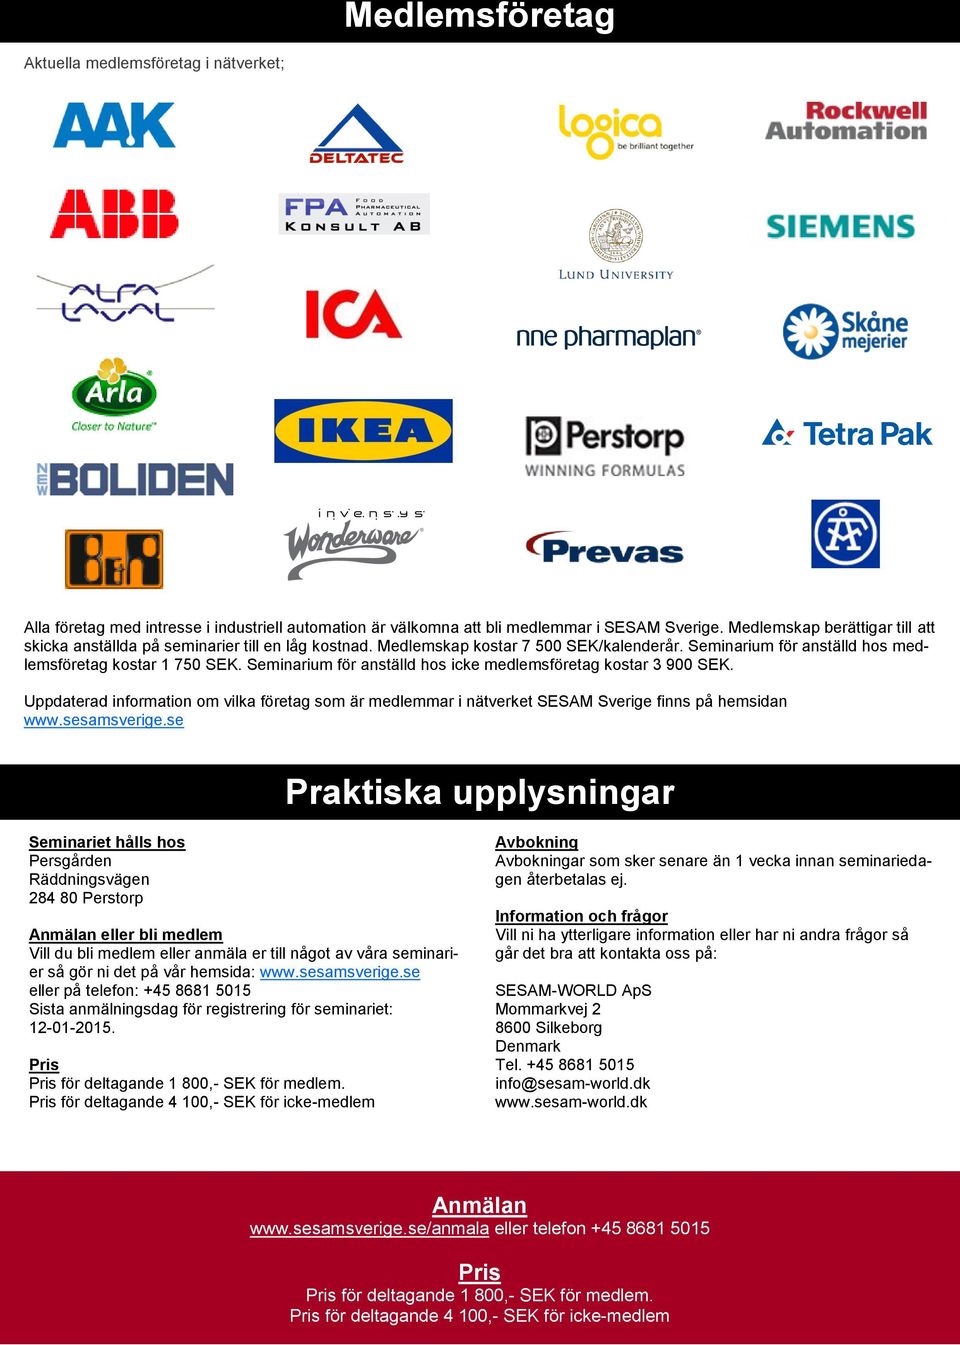 Seminarium för anställd hos icke medlemsföretag kostar 3 900 SEK. Uppdaterad information om vilka företag som är medlemmar i nätverket SESAM Sverige finns på hemsidan www.sesamsverige.